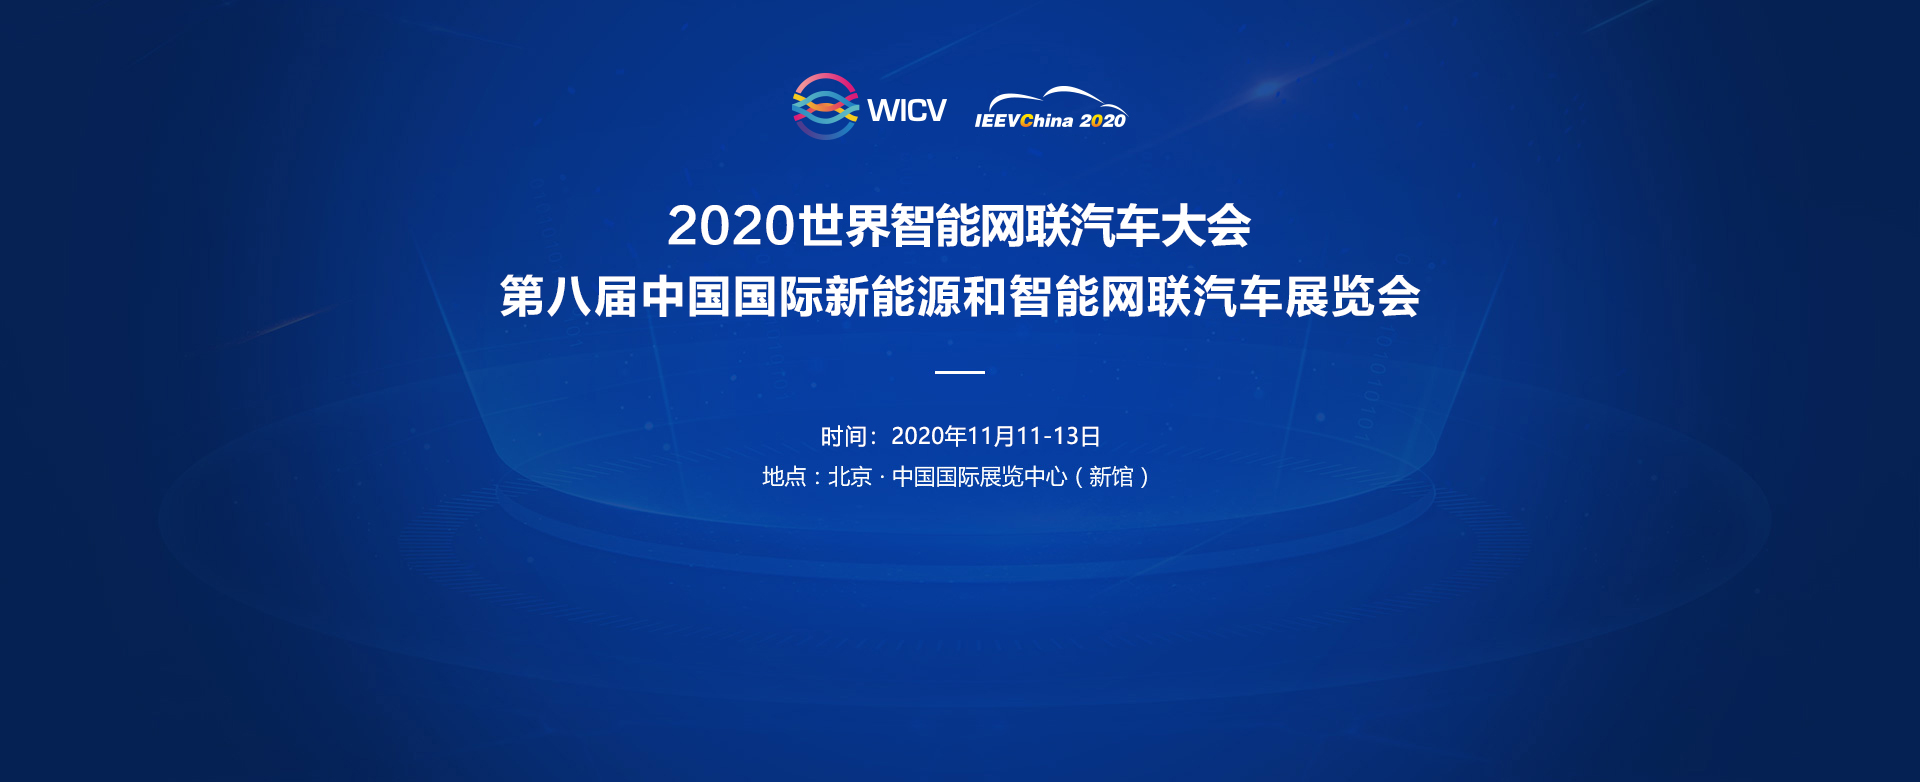 2020世界智能网联汽车大会 暨第八届中国国际新能源和智能网联汽车展览会